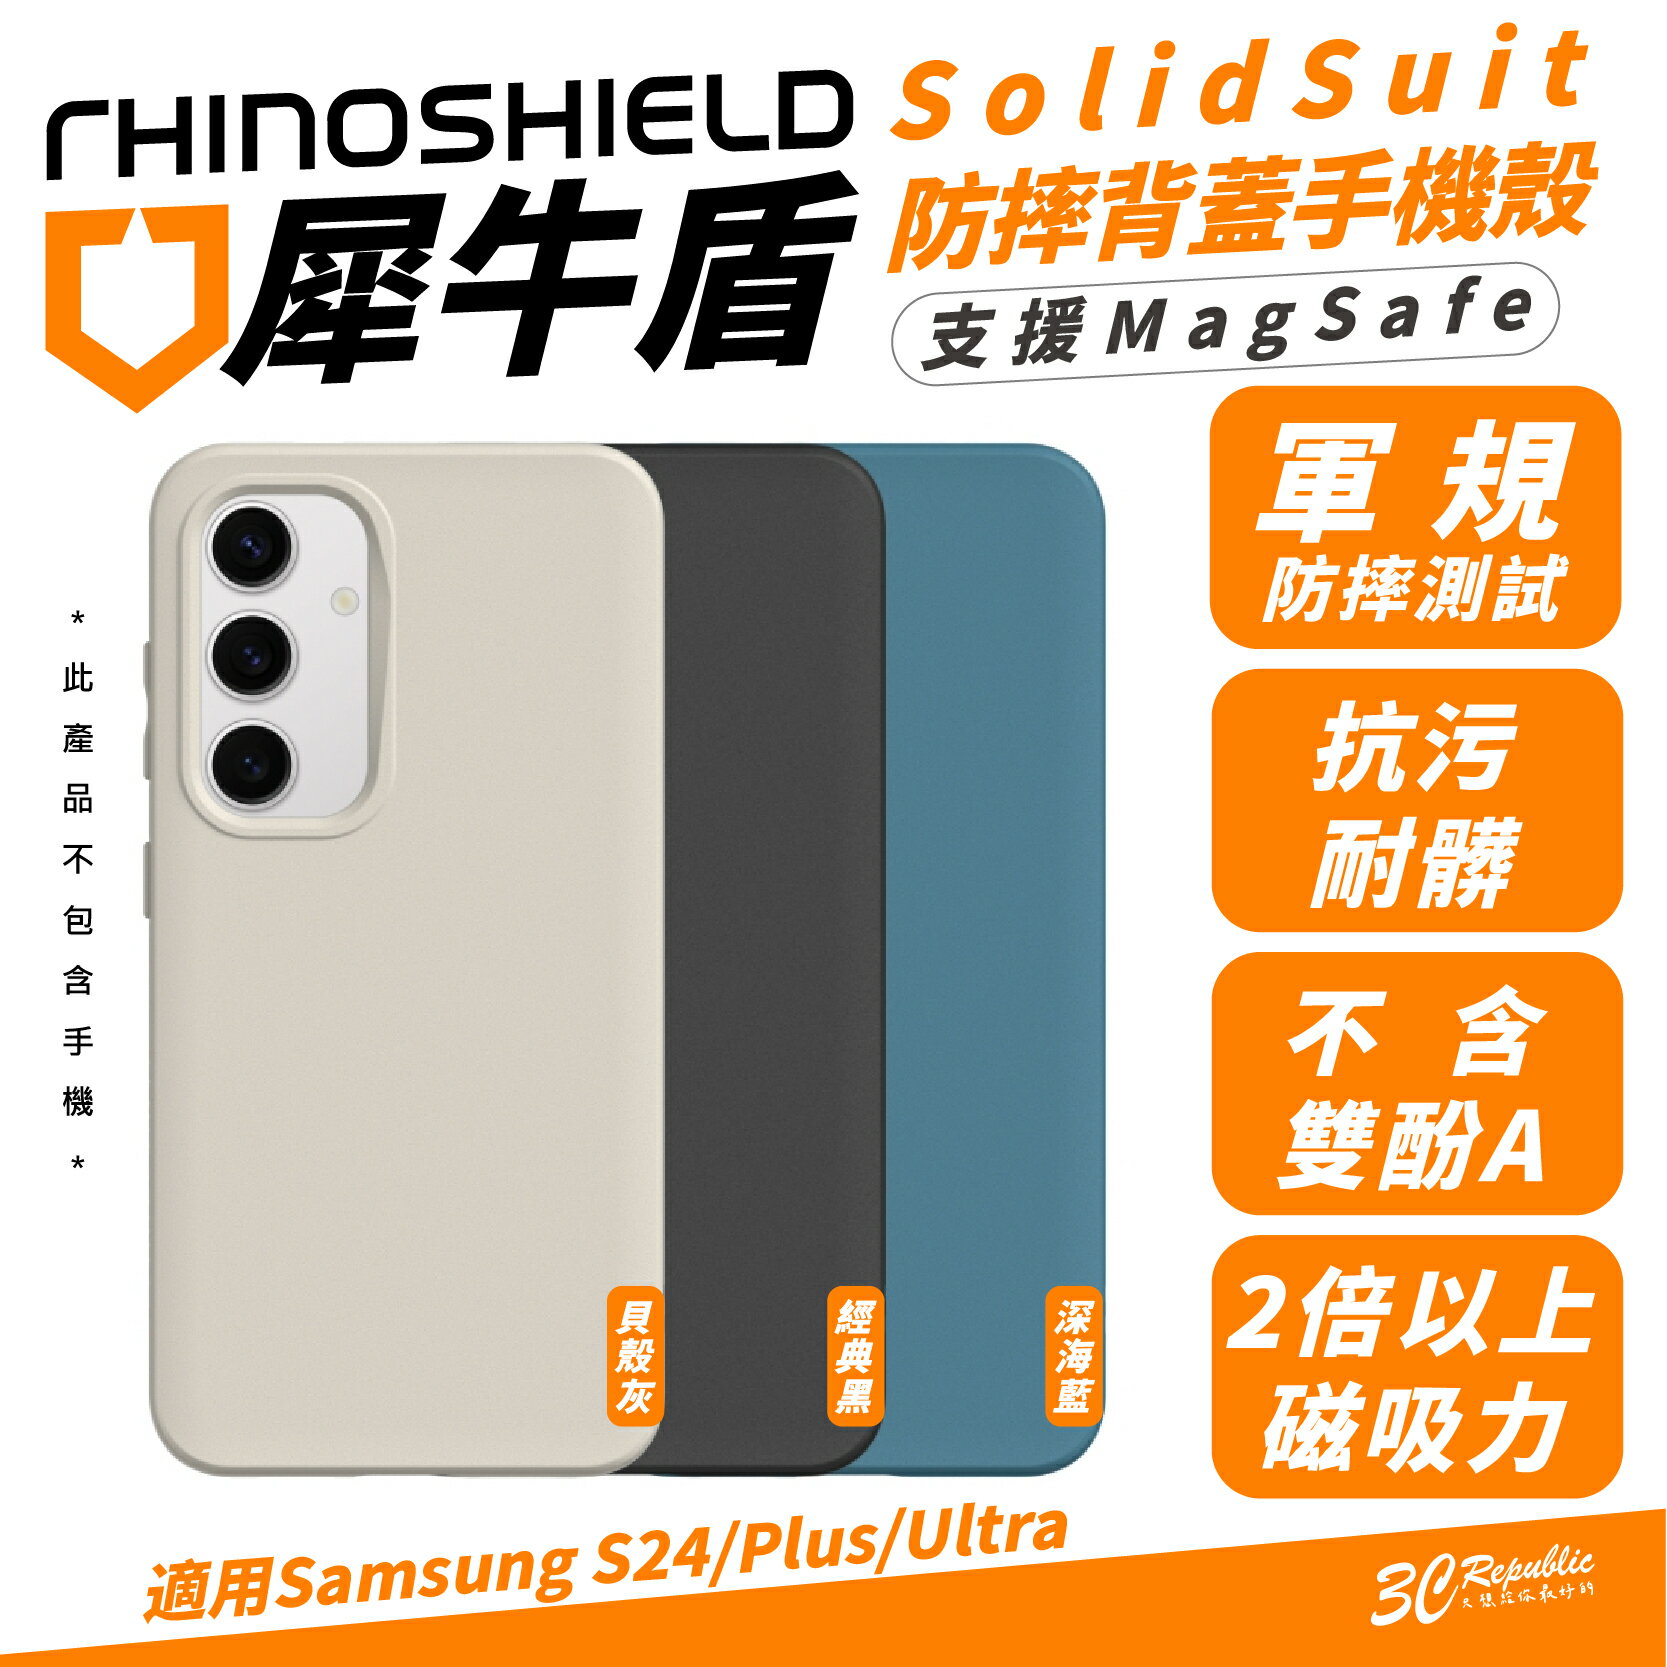 犀牛盾 SolidSuit 手機殼 防摔殼 保護殼 支援 MagSafe 適 Samsung S24 S24+ Plus【APP下單最高20%點數回饋】